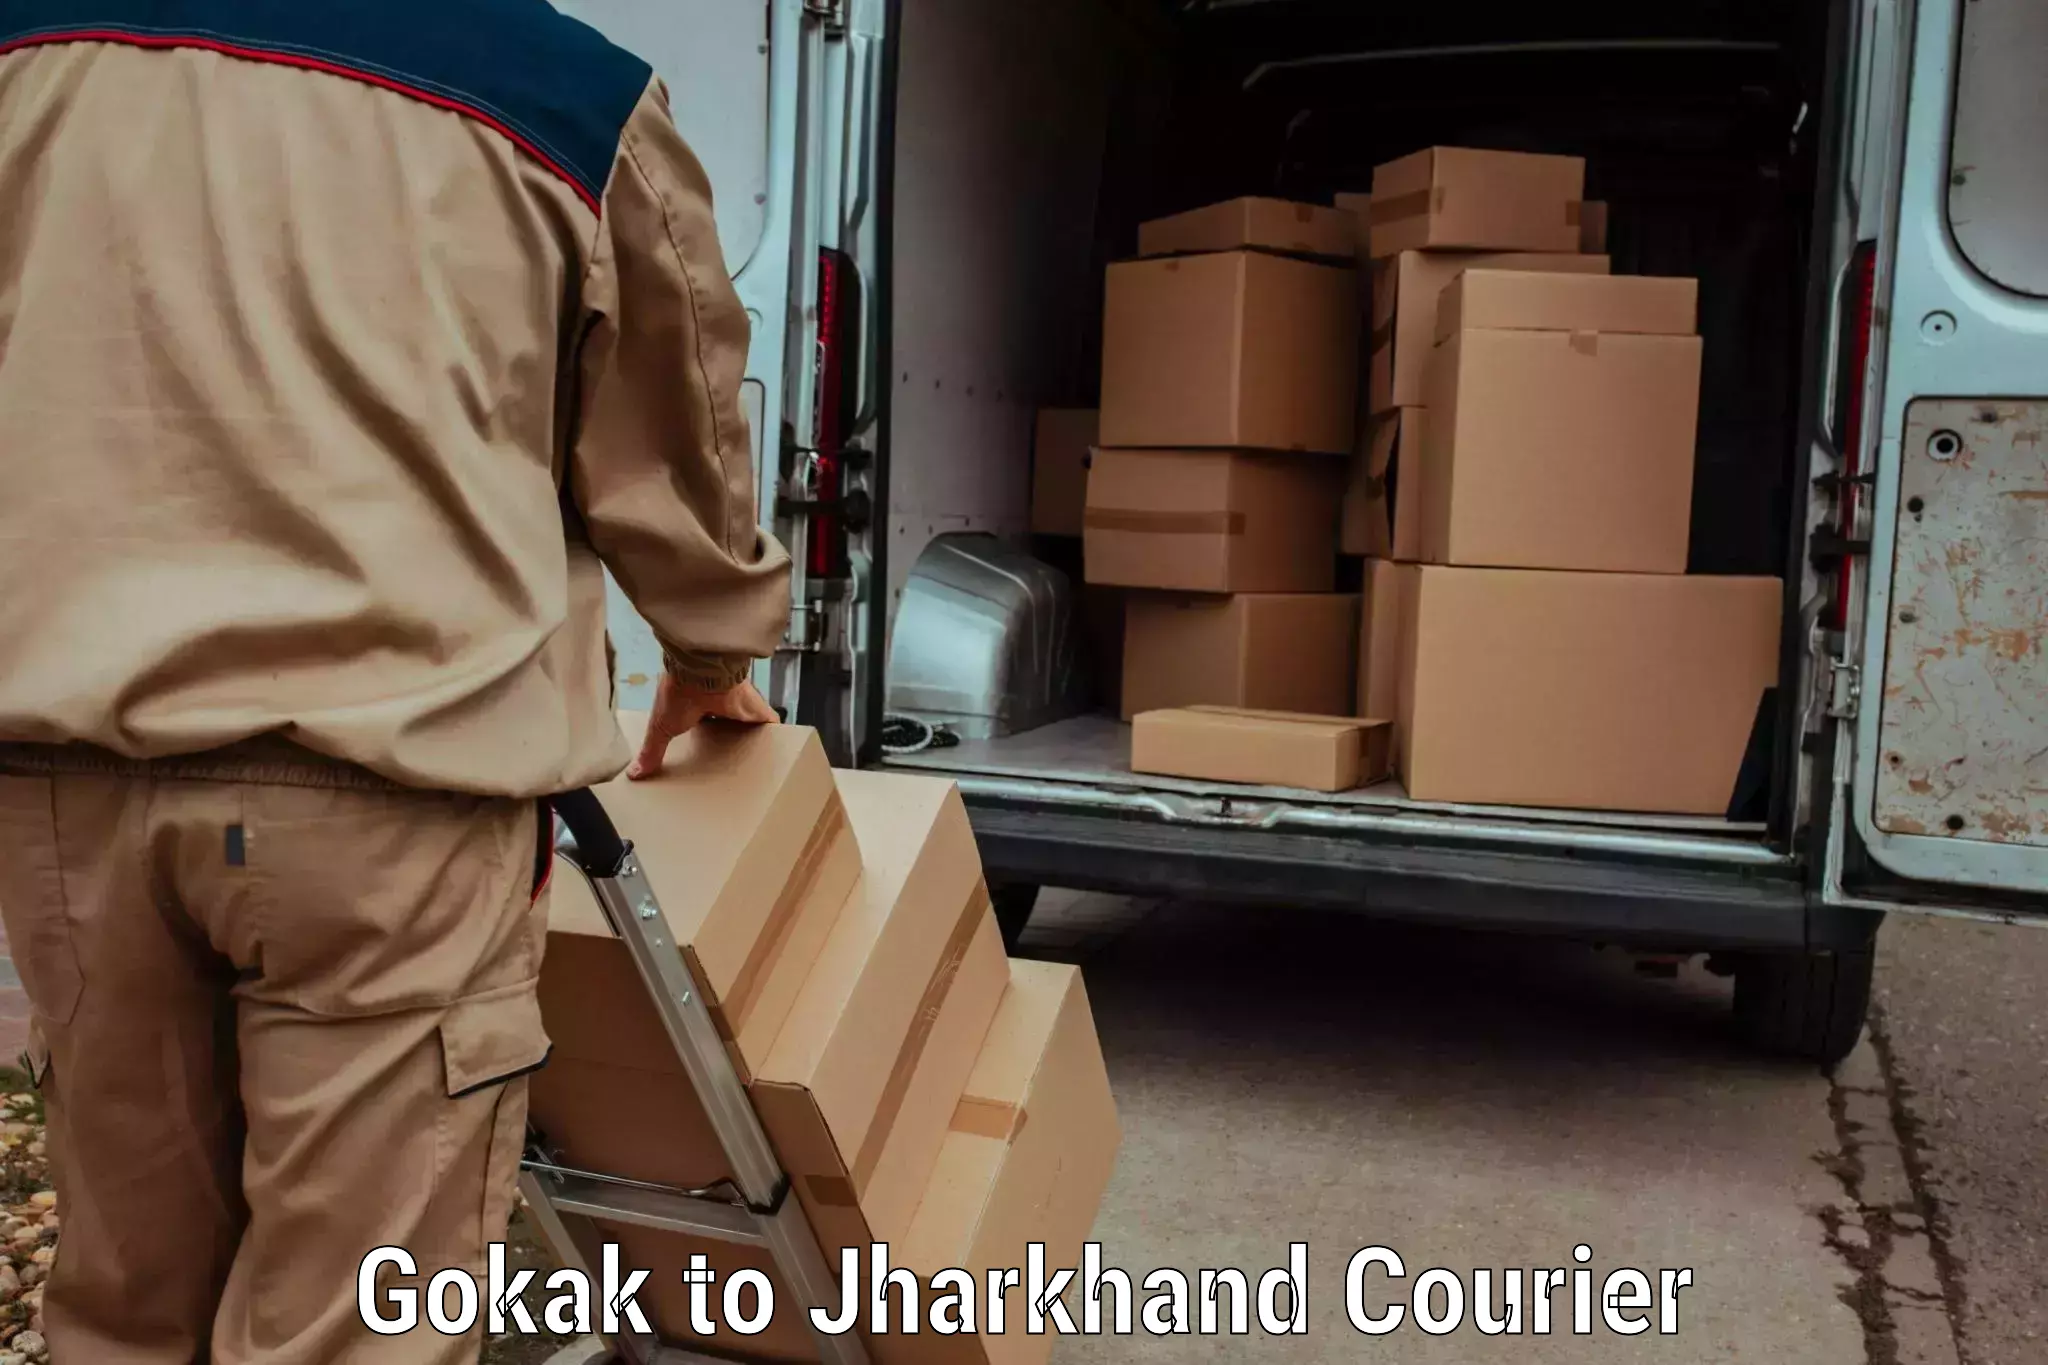 Efficient parcel service Gokak to Isri